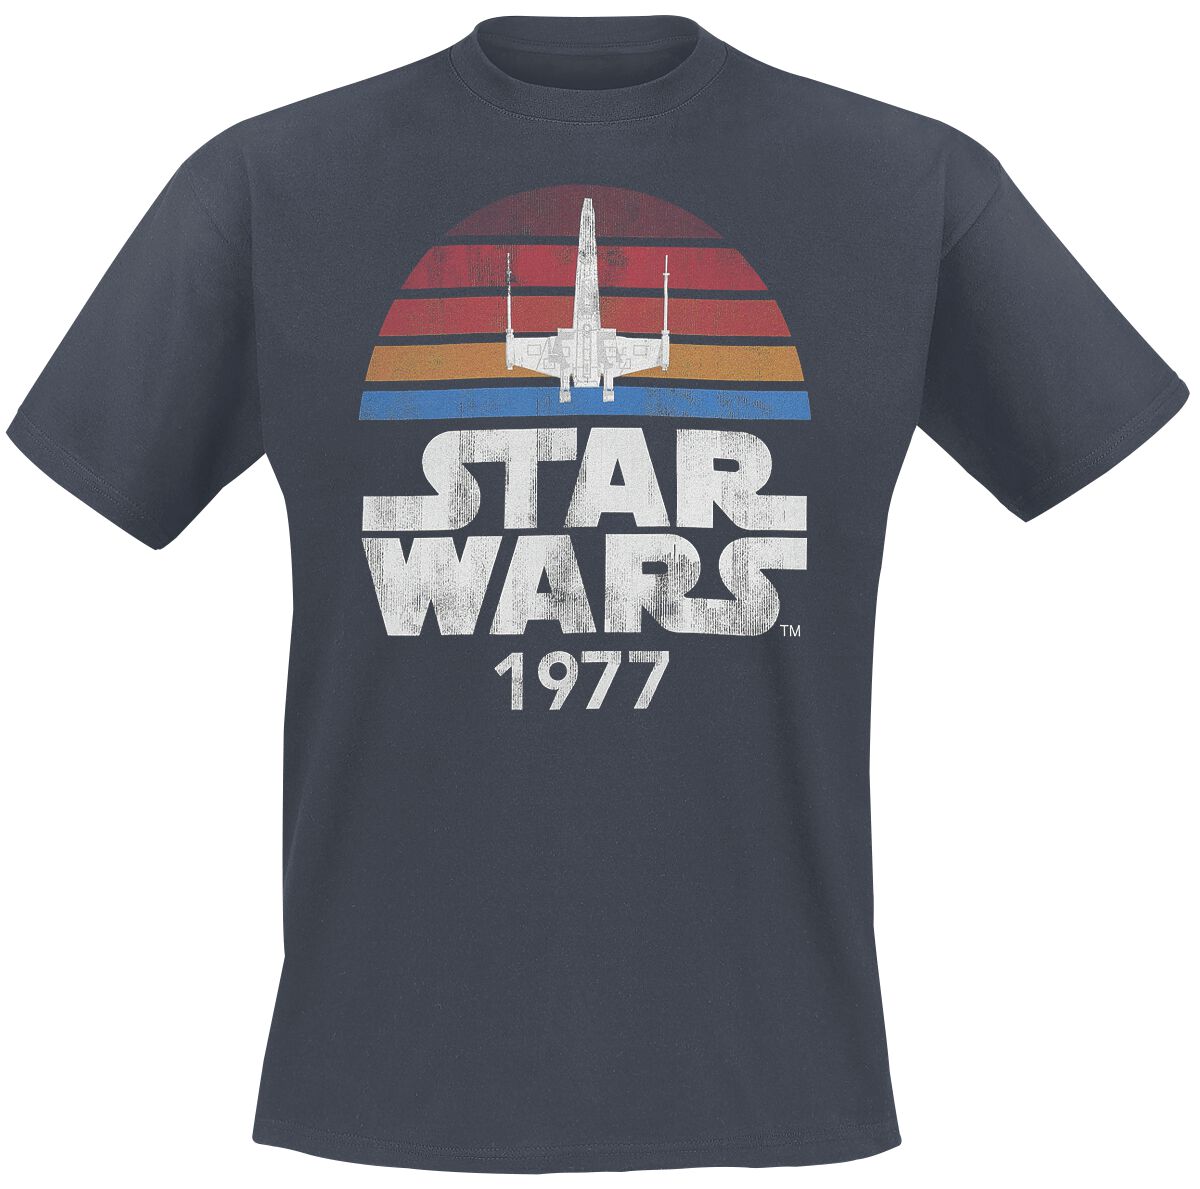 Star Wars T-Shirt - Since 1977 - S bis XXL - für Männer - Größe S - anthrazit  - Lizenzierter Fanartikel